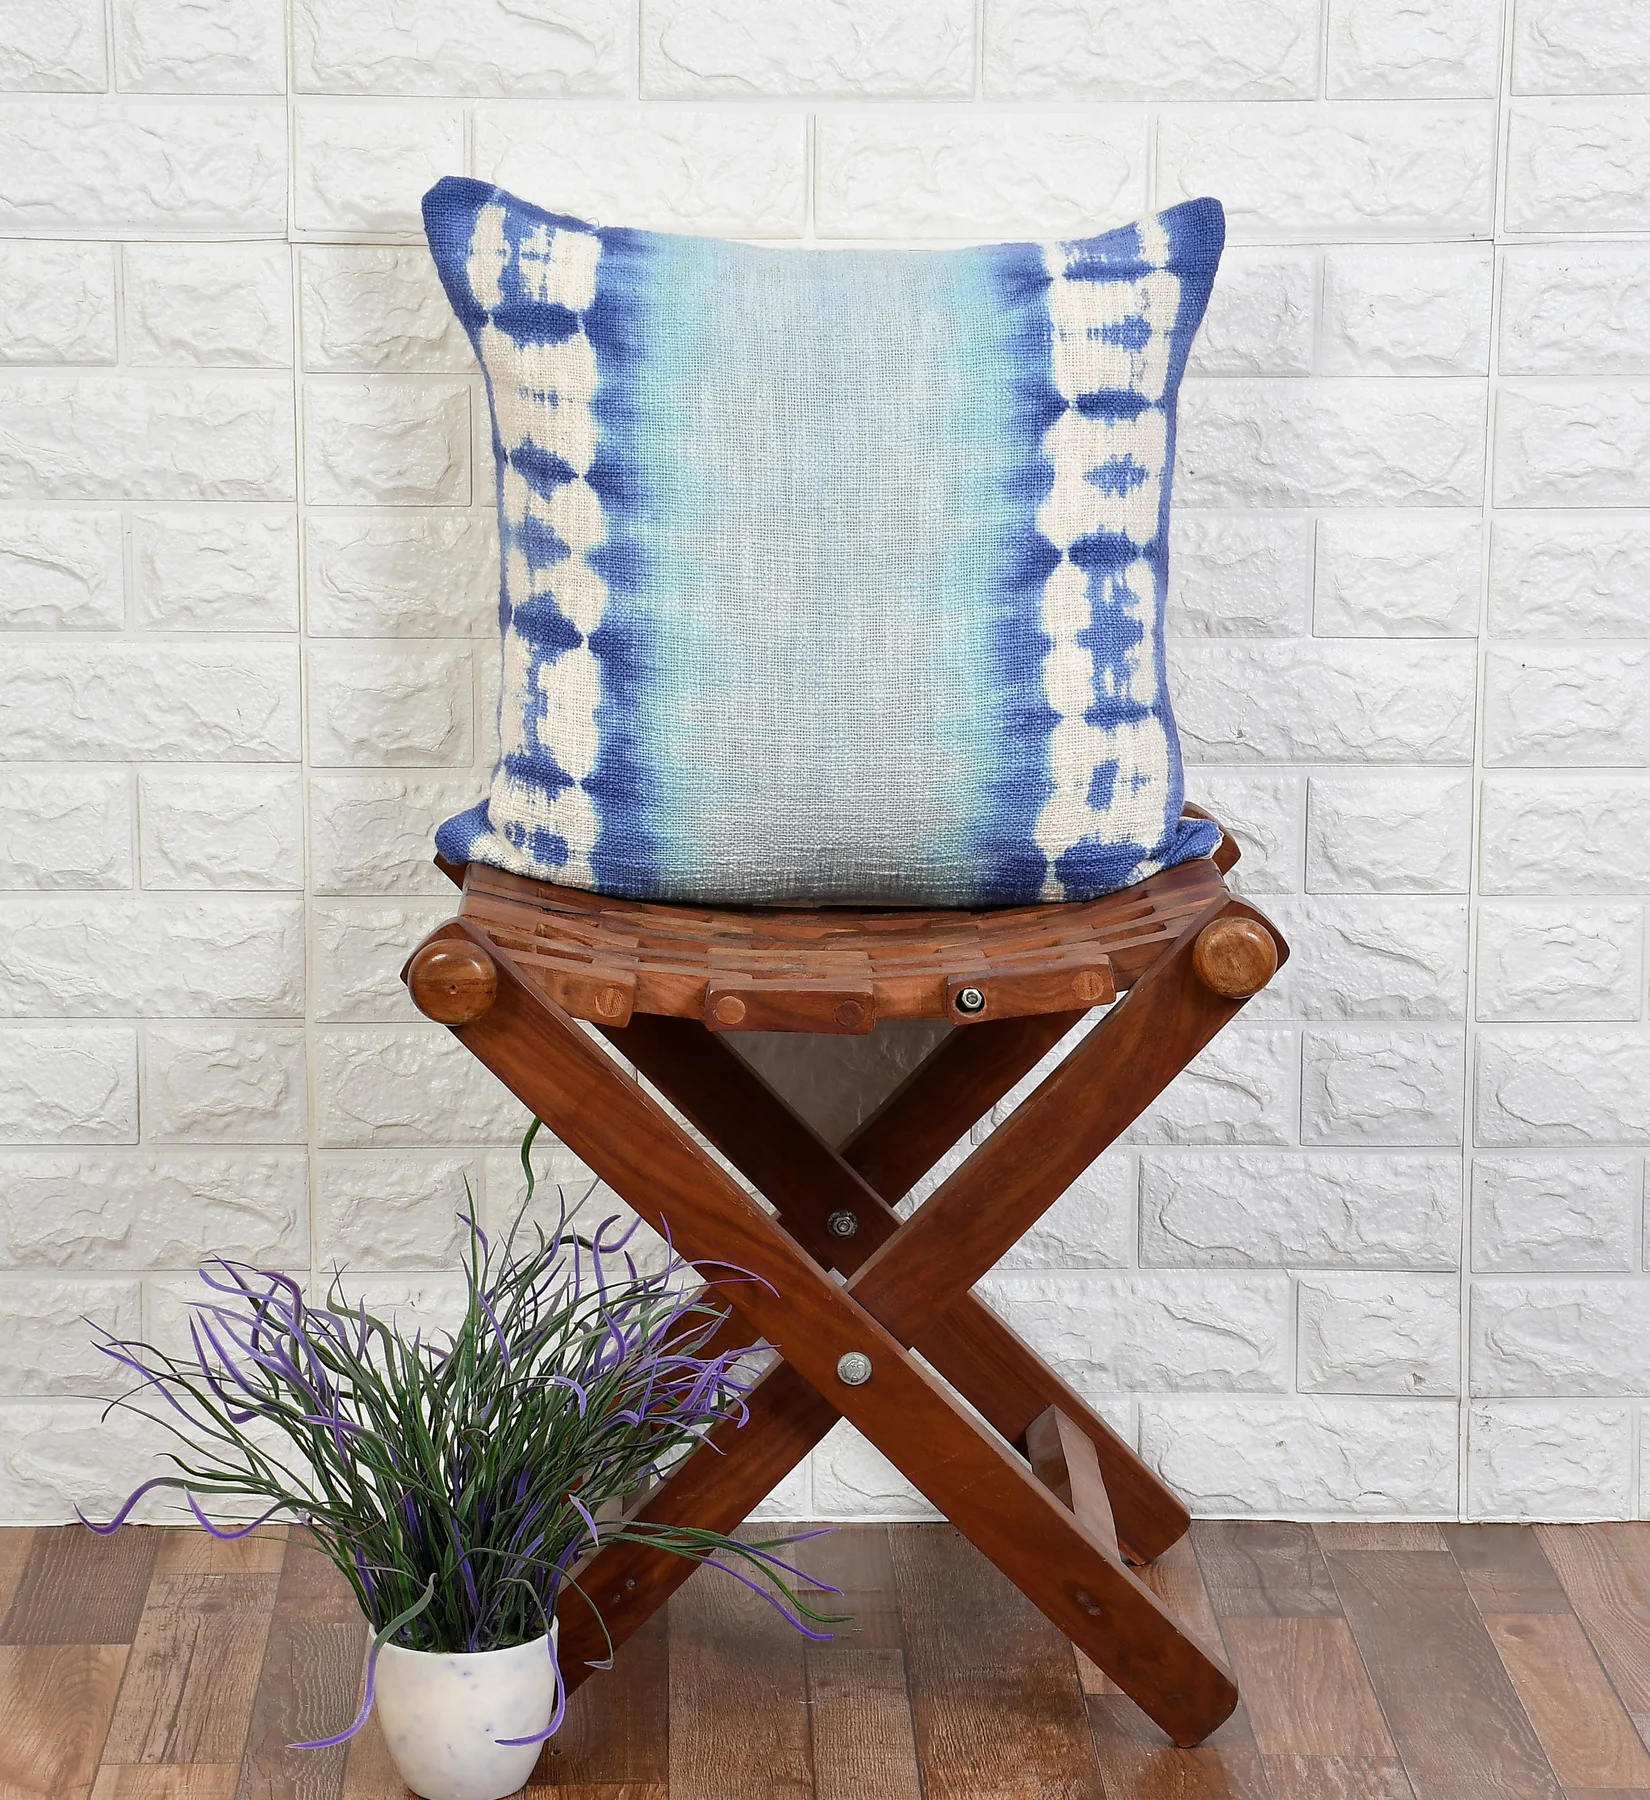 Shibori tie dye Cushion Cover, Cotton Slub, 18x18, blue shade, white